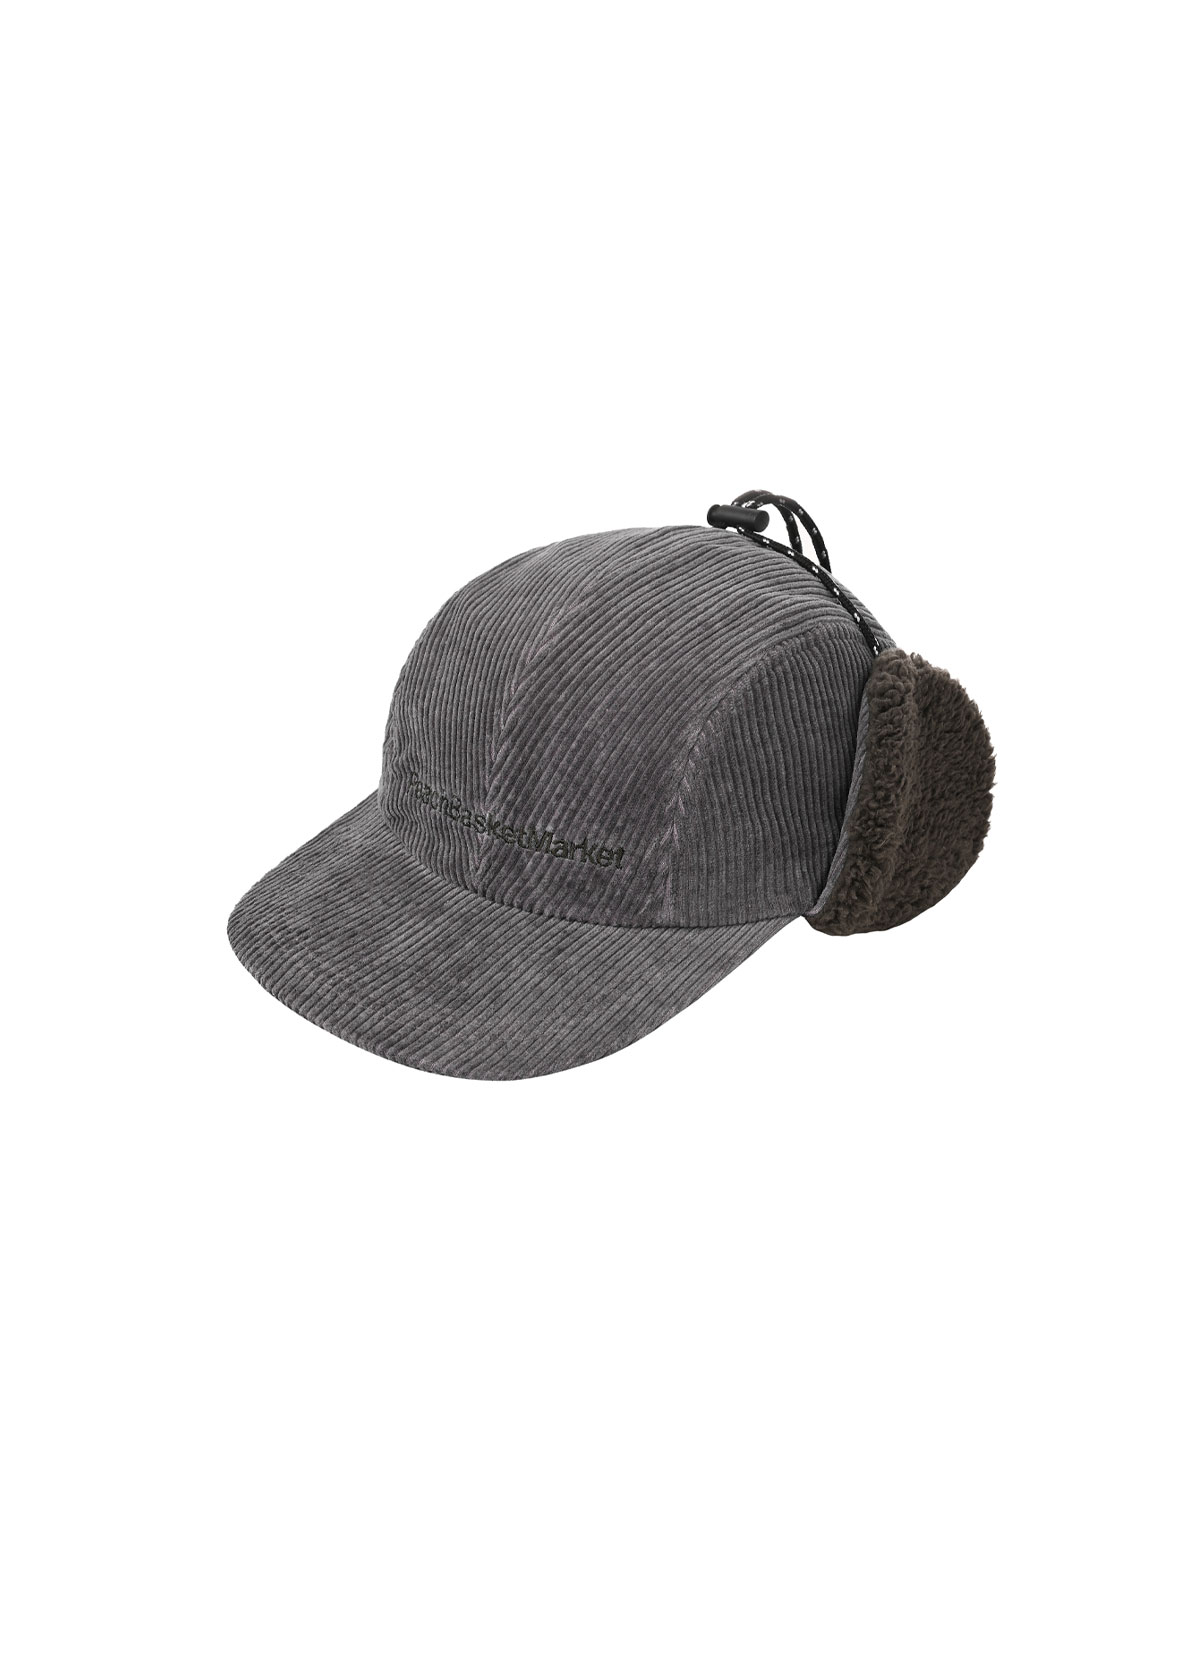 Pigment Trooper Hat (gray)